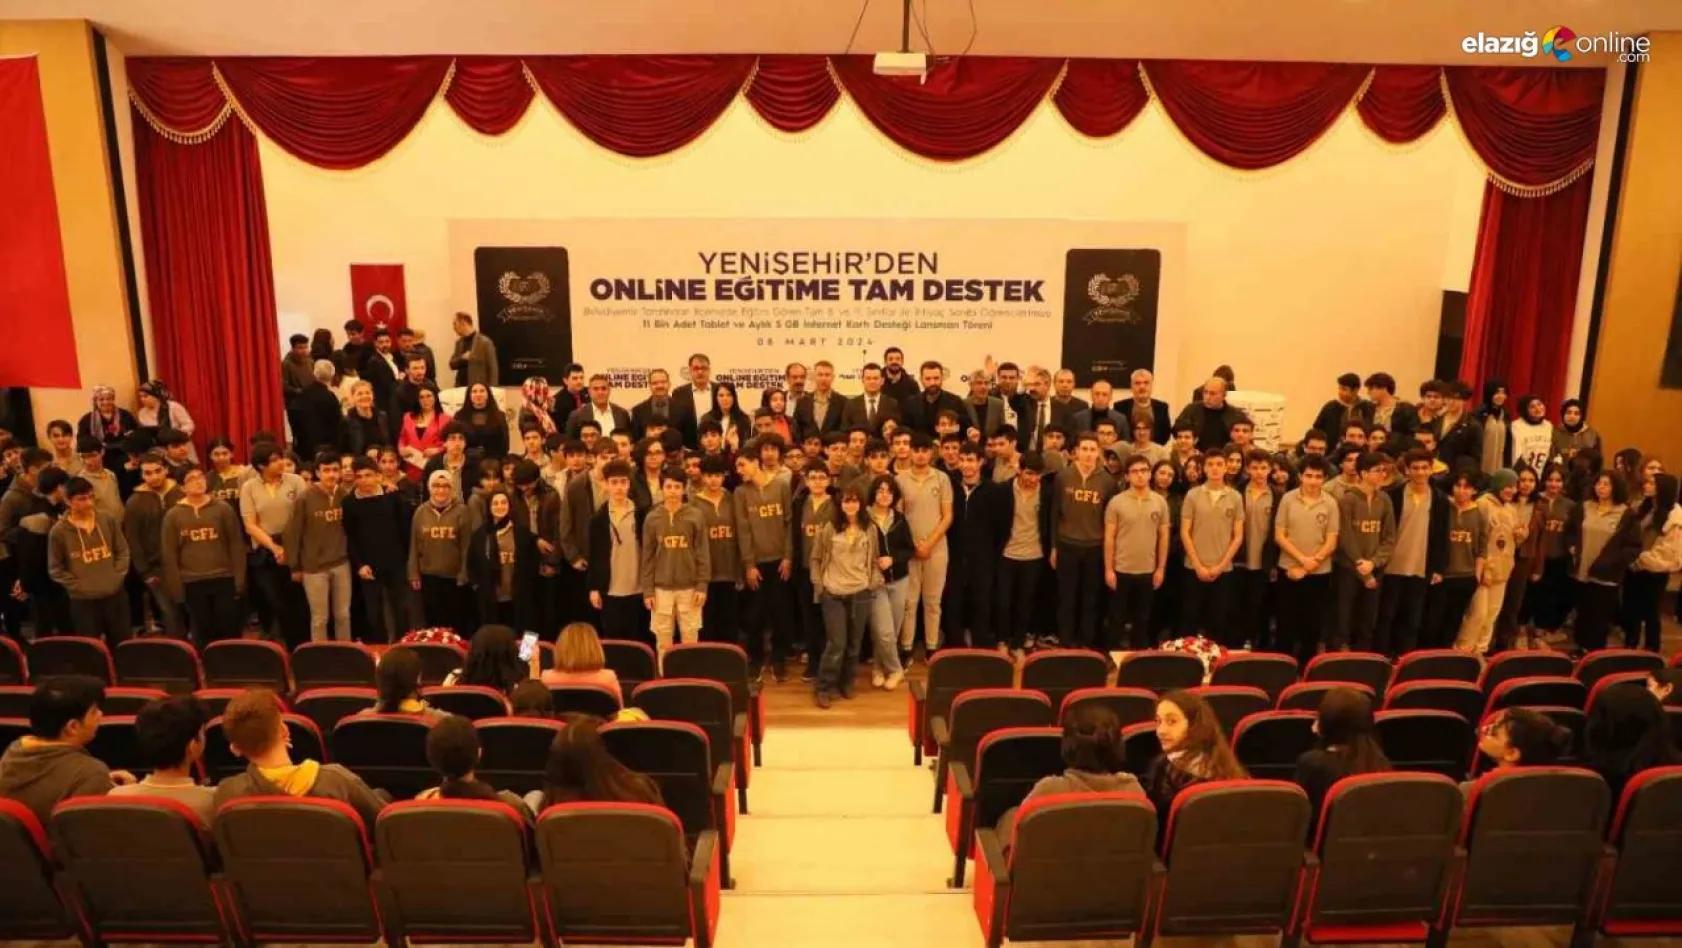 Yenişehir'de 11 bin öğrenciye tablet desteği